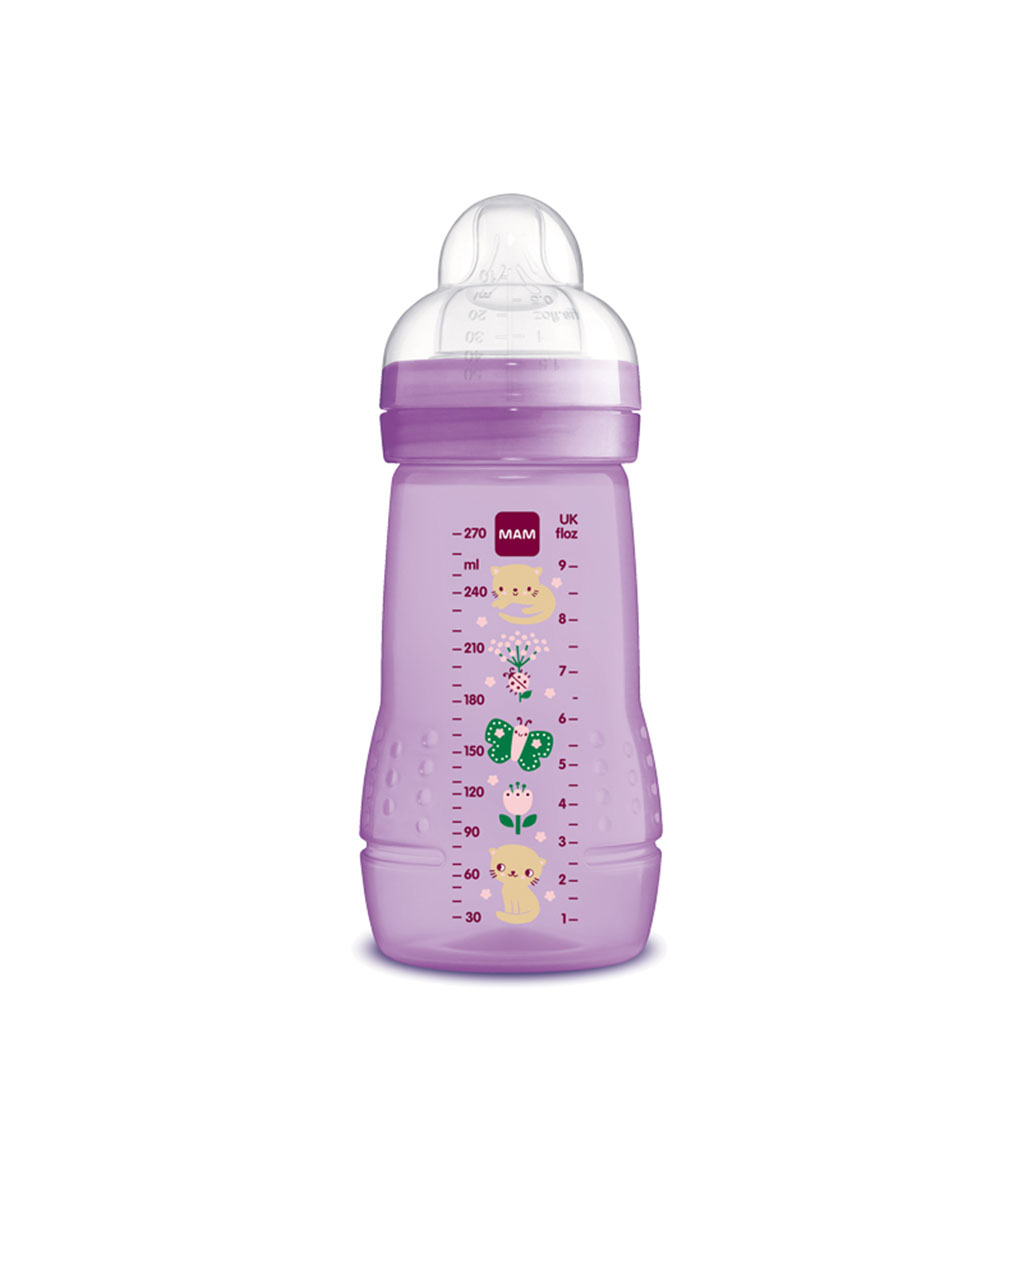 Mam μπιμπερό easy active baby bottle 270ml girl 2+ μηνών - Mam